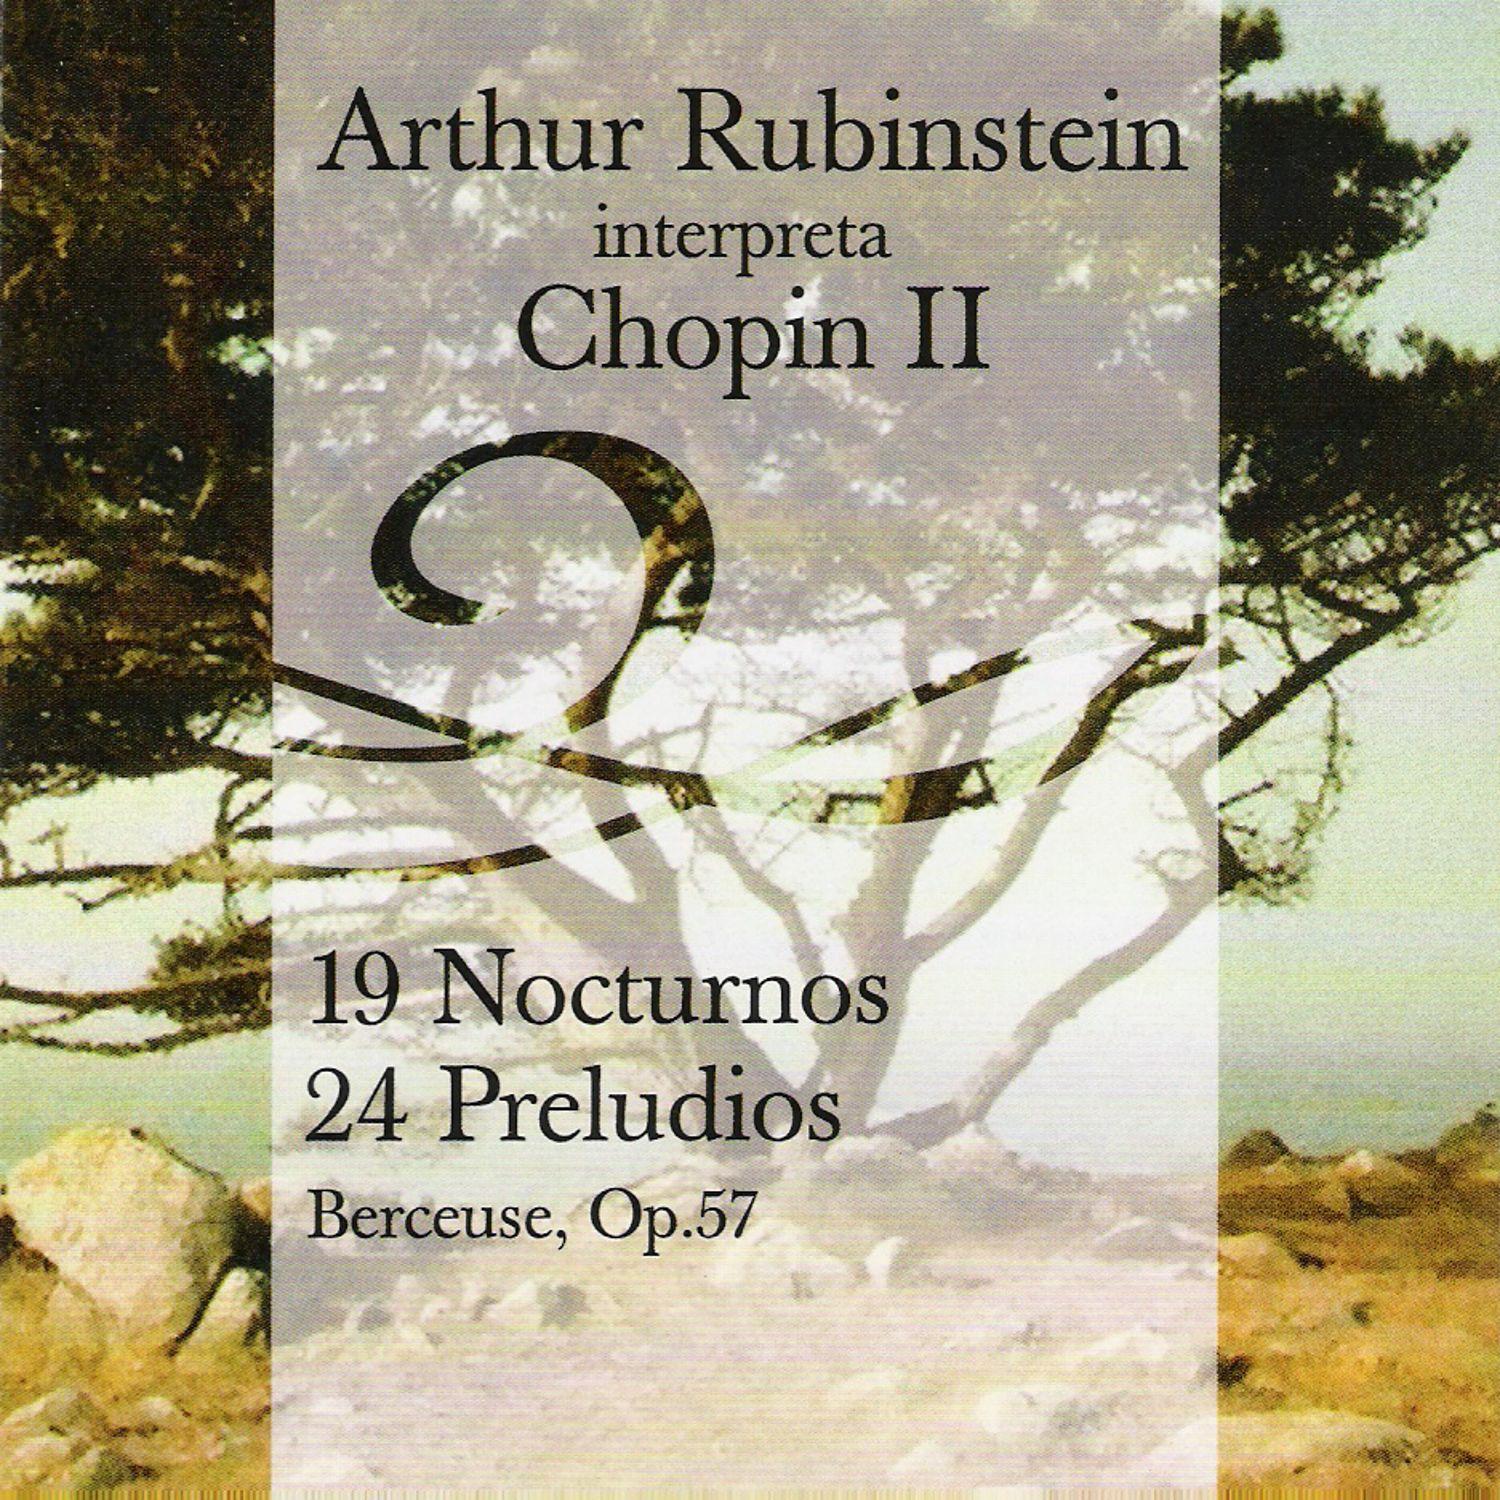 Arthur Rubinstein Interpreta Chopin Vol. II - 19 Nocturnos 24 Preludios